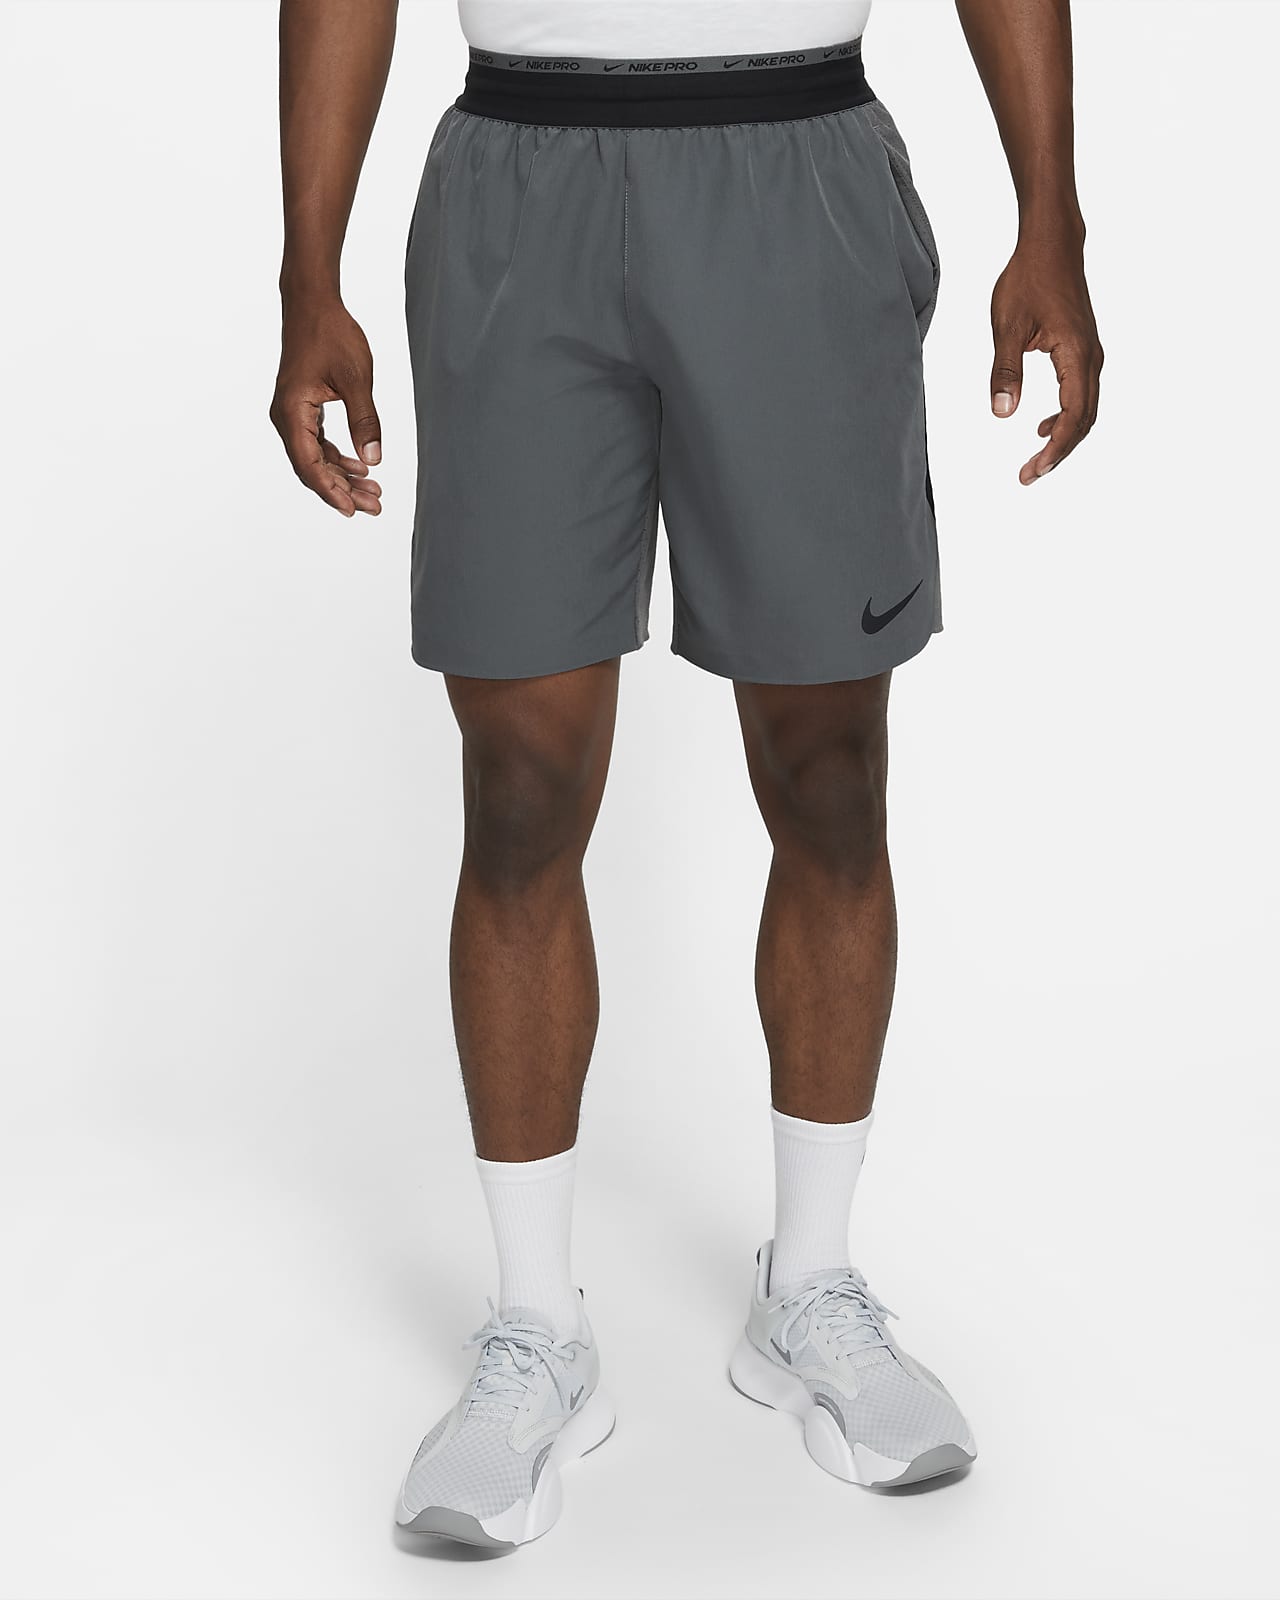 Shorts da training non foderati 20 cm Nike Dri-FIT Flex Rep Pro Collection – Uomo